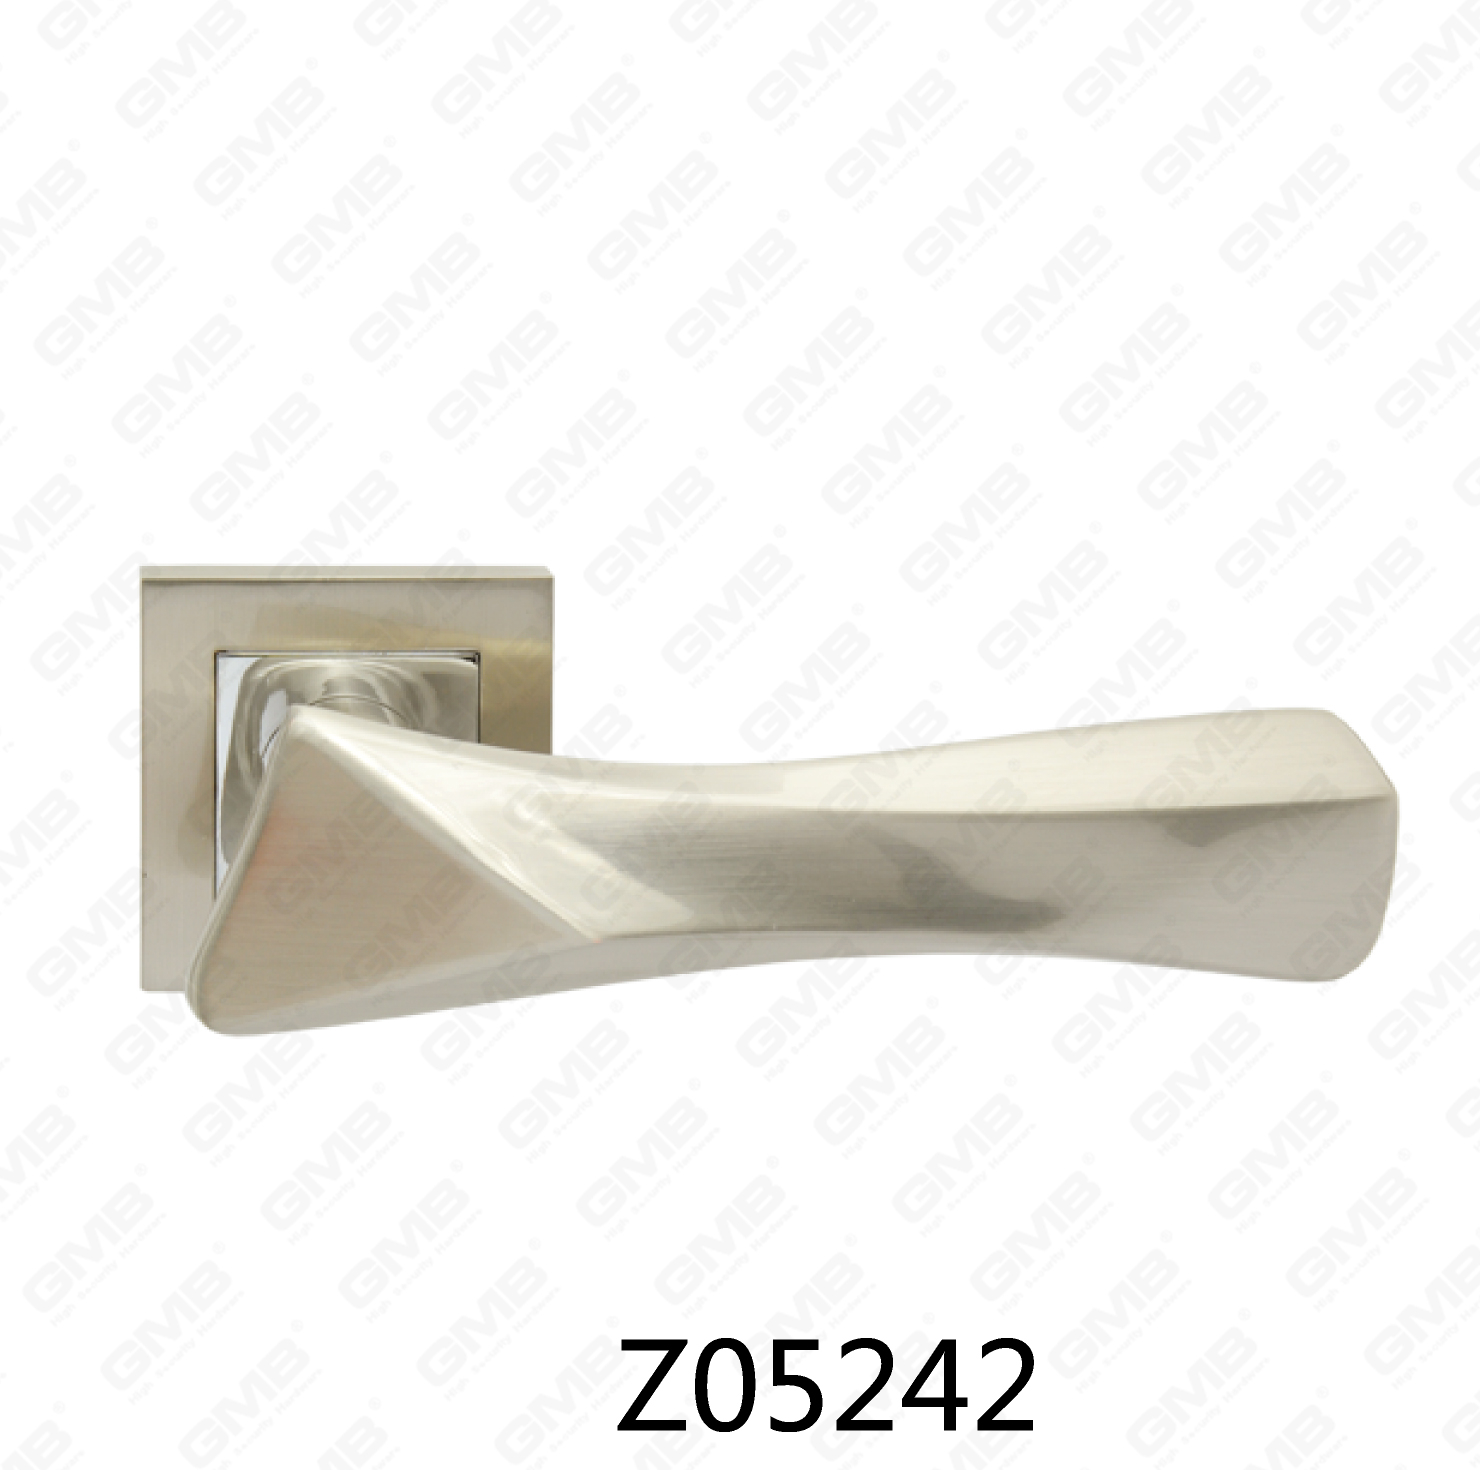 ידית דלת רוזטה מסגסוגת אבץ של Zamak עם רוזטה עגולה (Z05242)